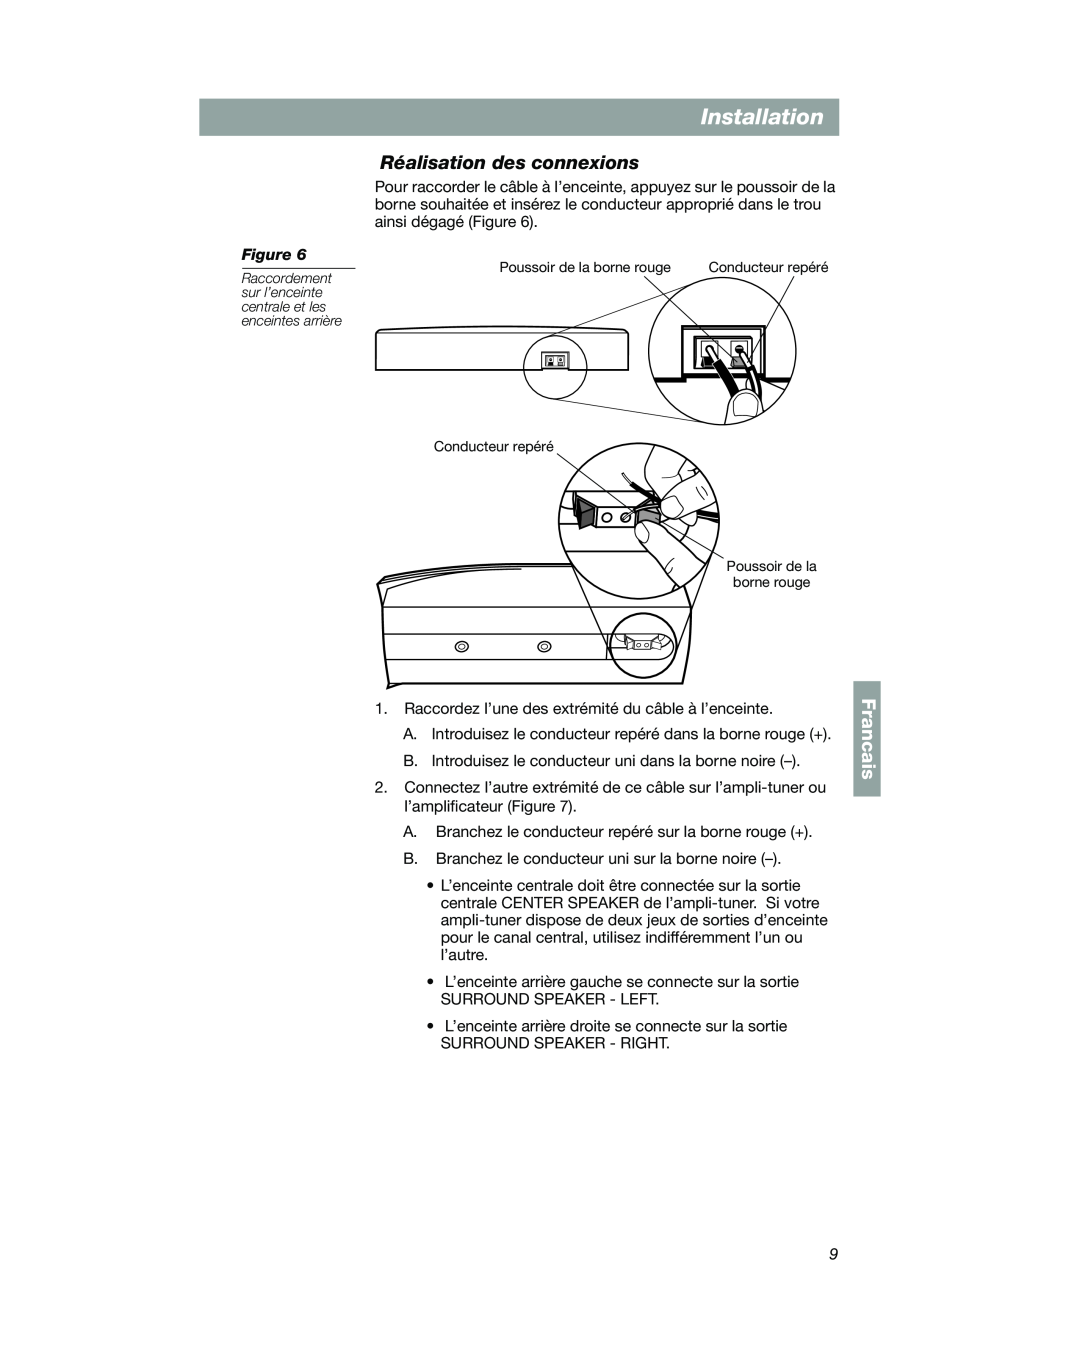 Bose VCS-10 manual Réalisation des connexions, Installation, Francais 